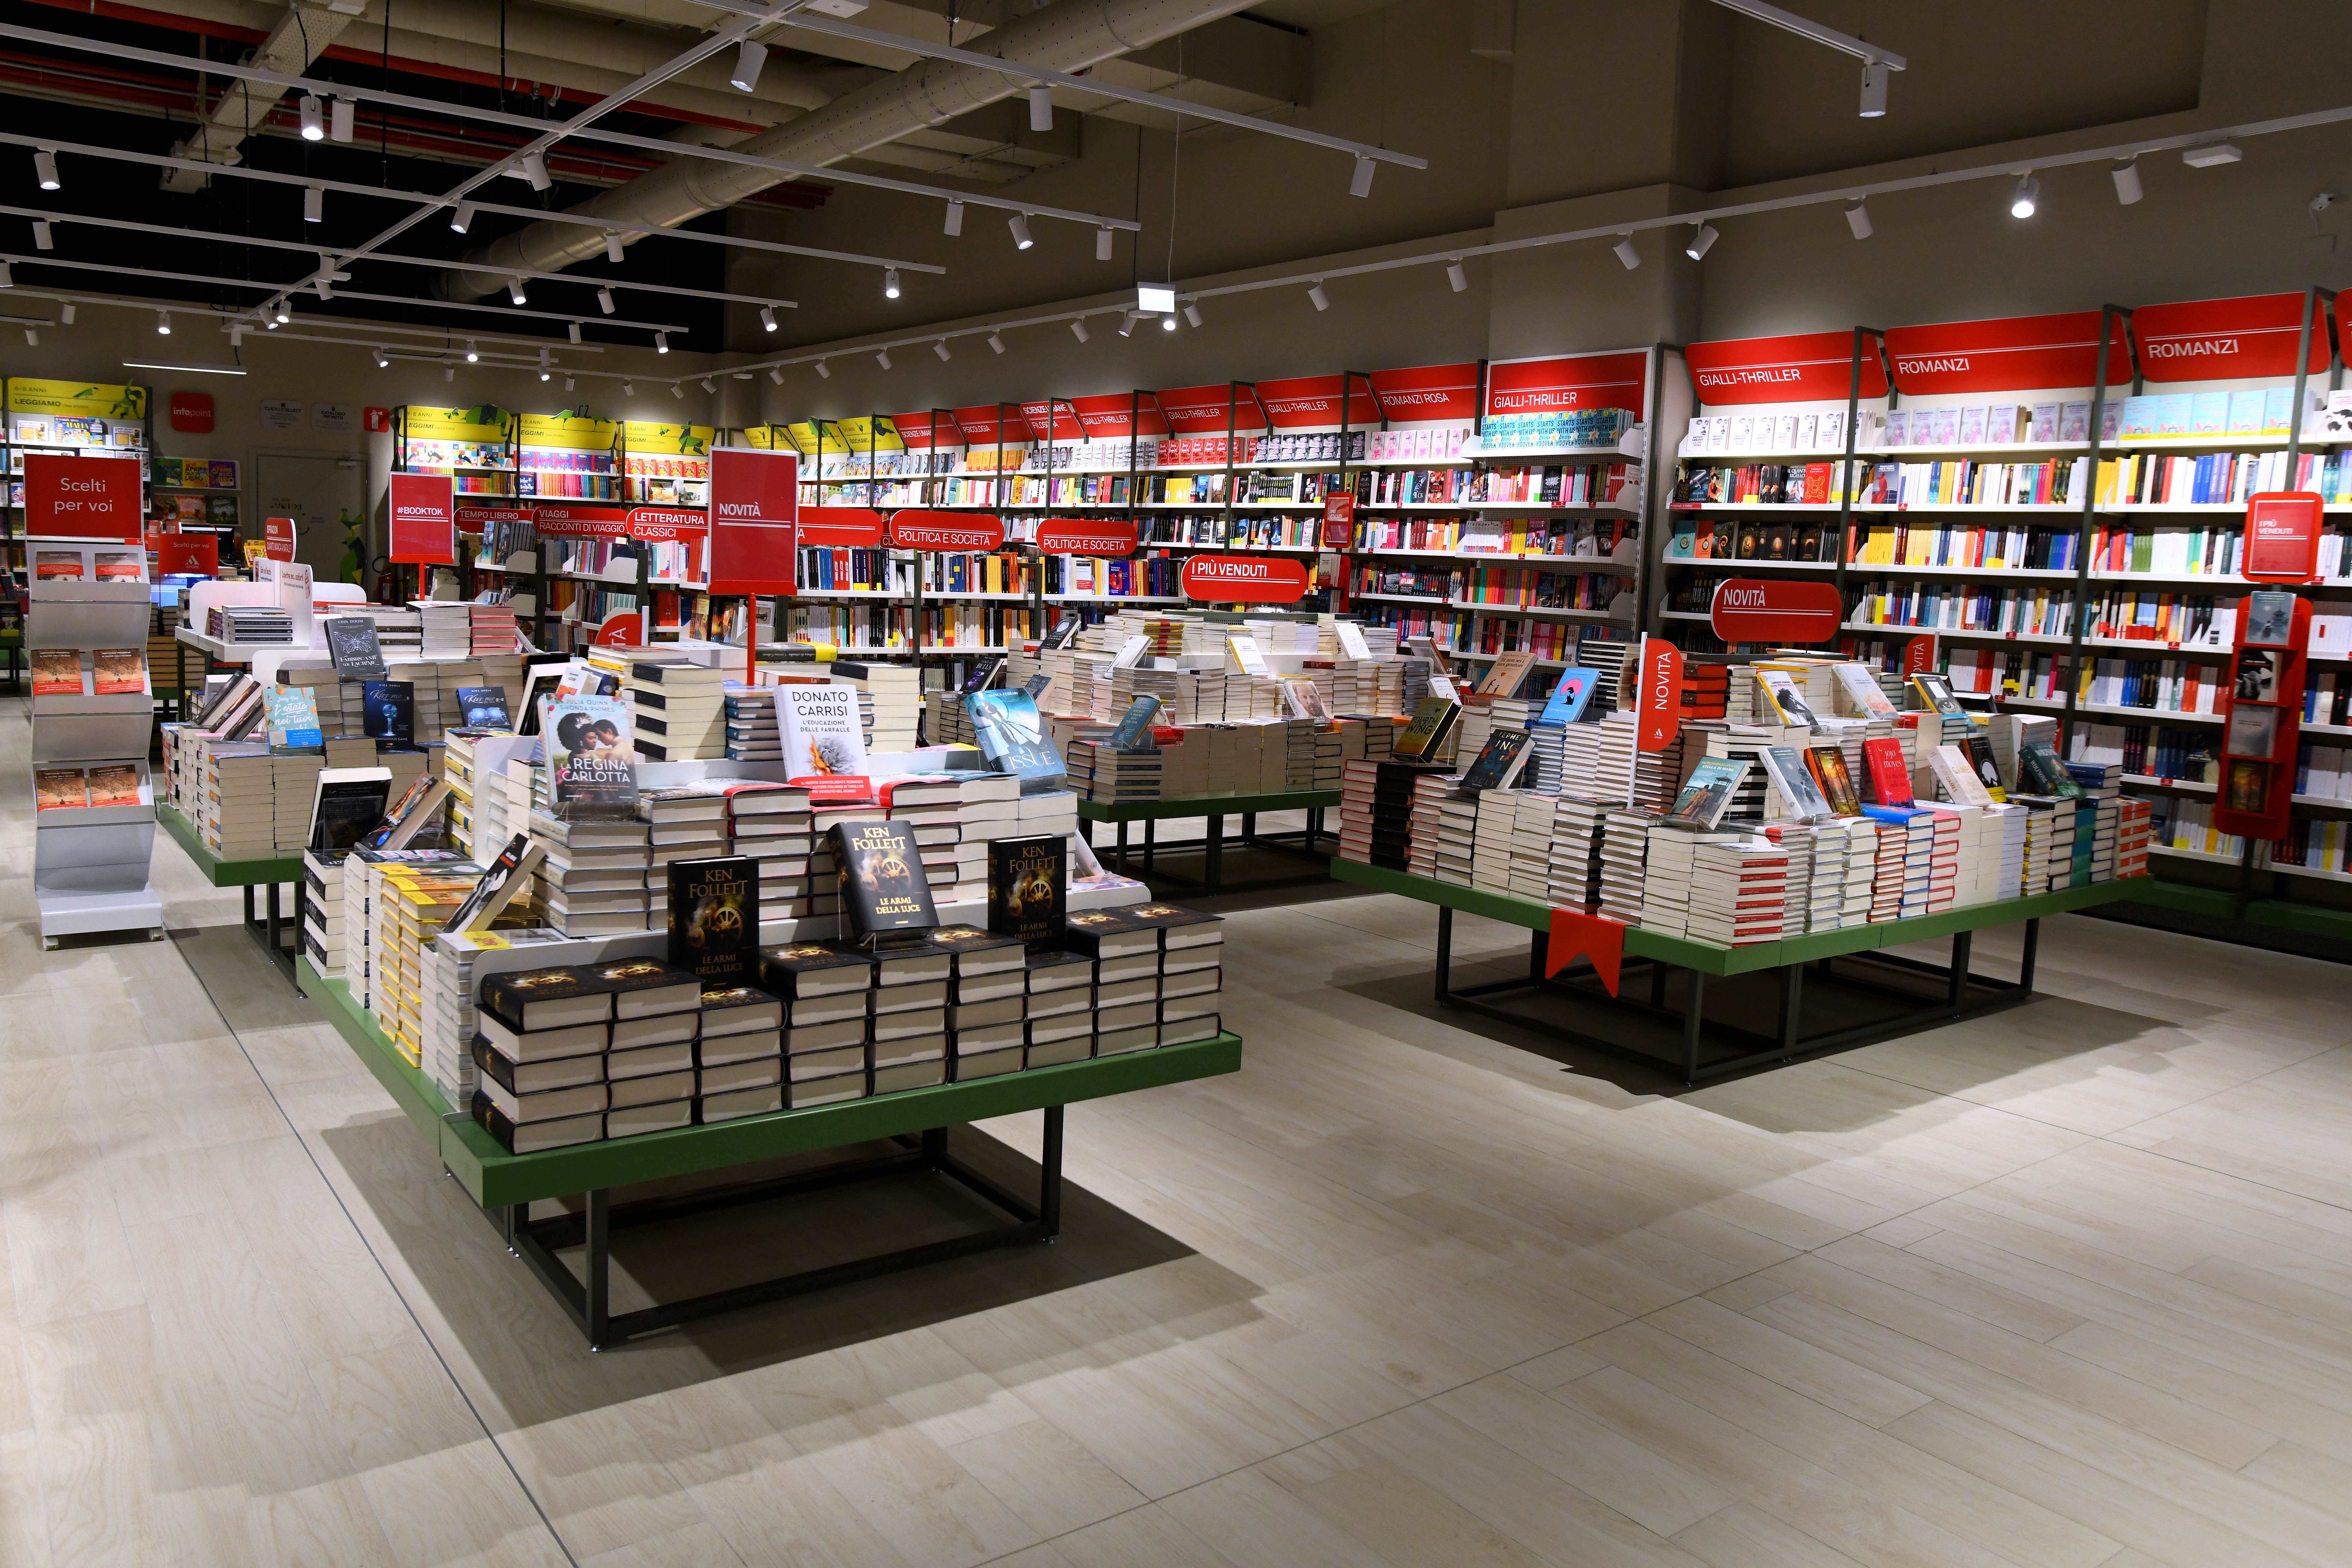 Apre il Mondadori Bookstore nel nuovo Merlata Bloom di Milano -  politicamentecorretto.com